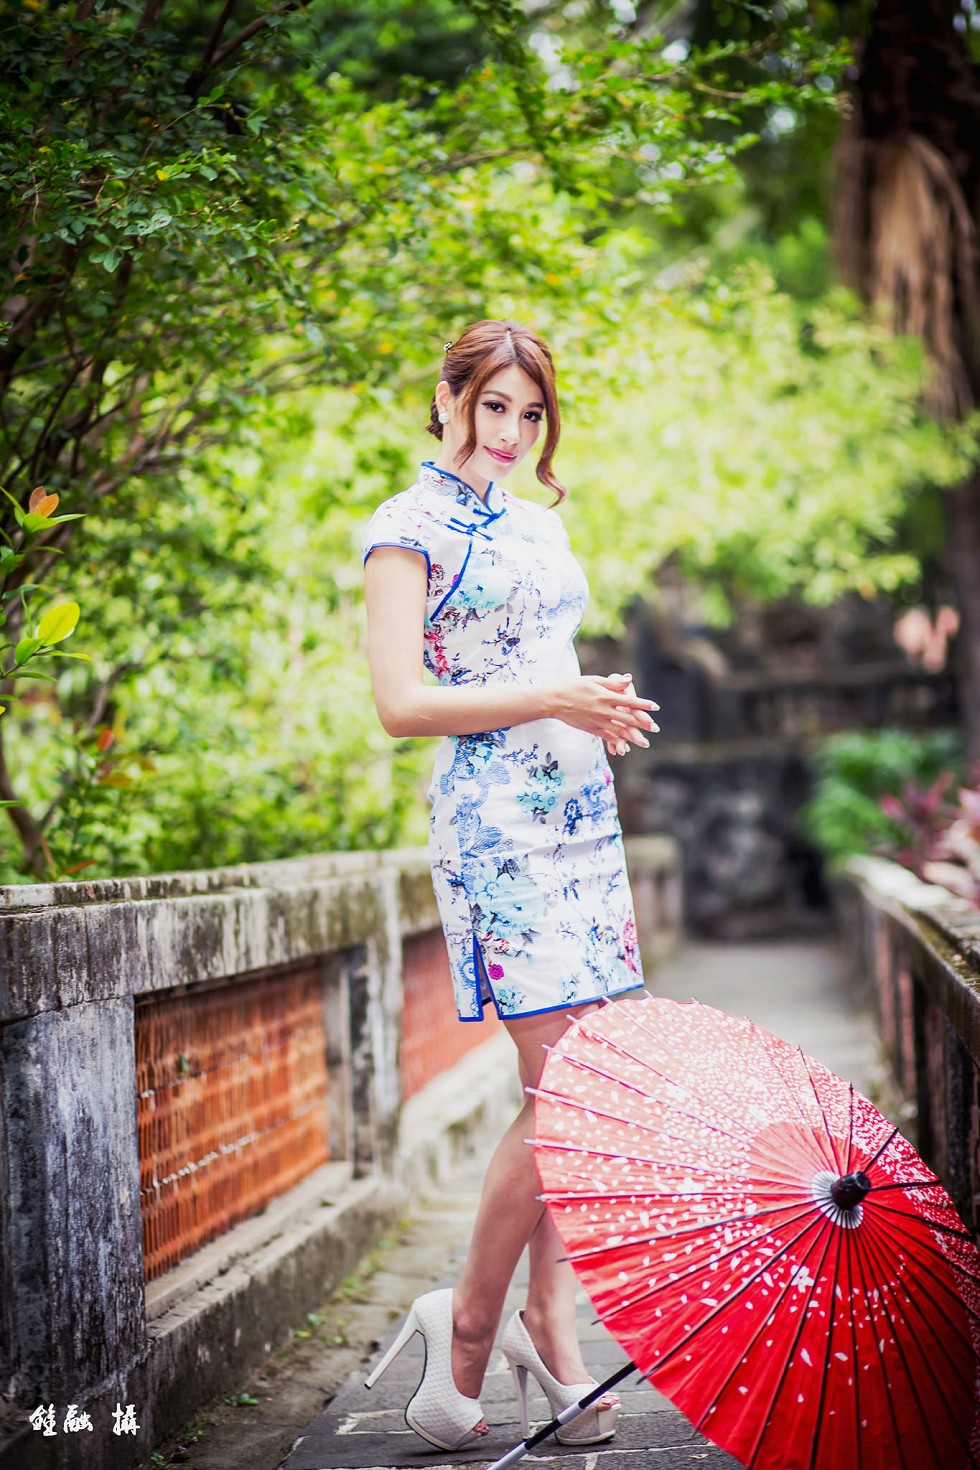 台湾正妹邬育錡户外旗袍系列秀完美身材性感迷人写真